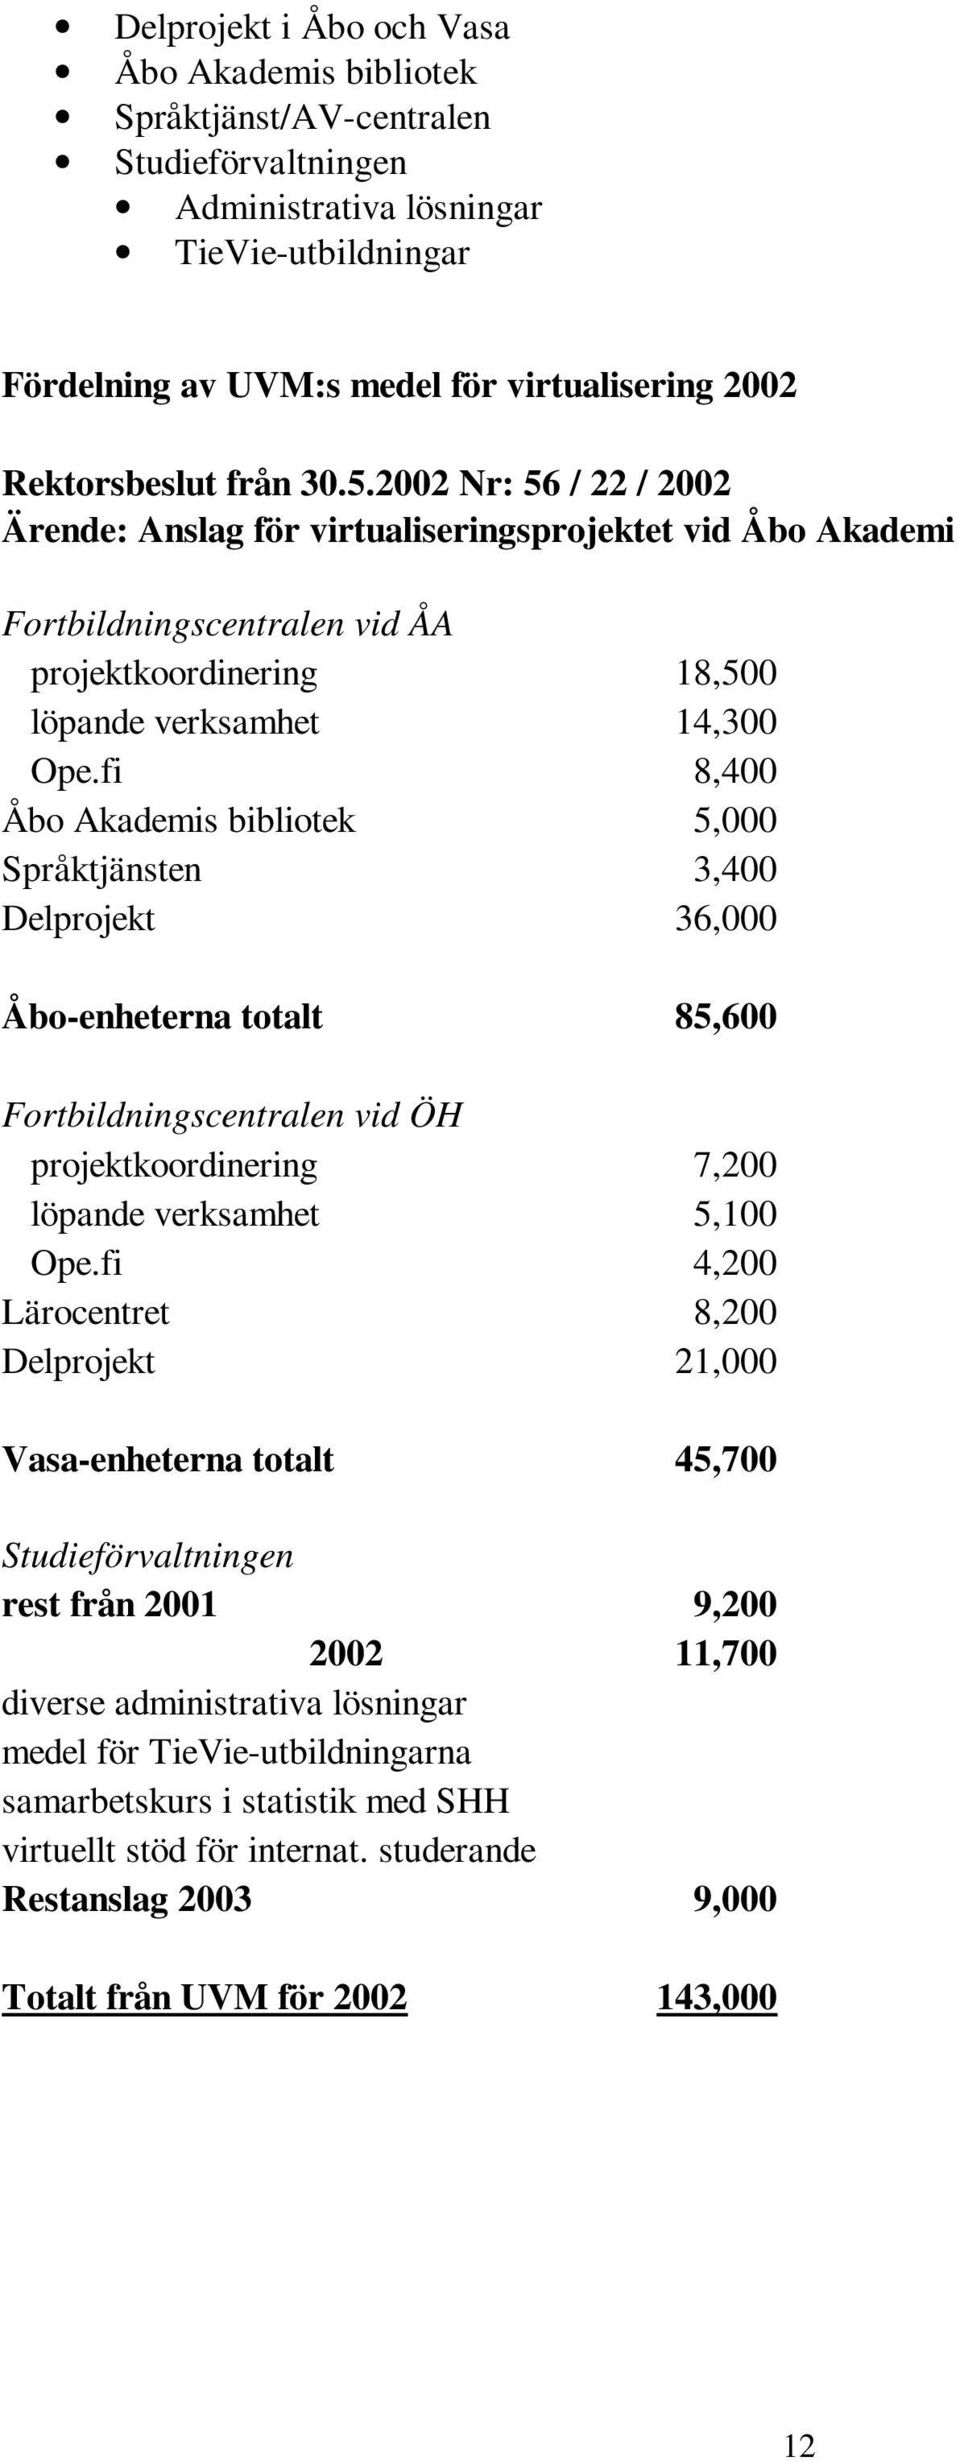 fi 8,400 Åbo Akademis bibliotek 5,000 Språktjänsten 3,400 Delprojekt 36,000 Åbo-enheterna totalt 85,600 Fortbildningscentralen vid ÖH projektkoordinering 7,200 löpande verksamhet 5,100 Ope.